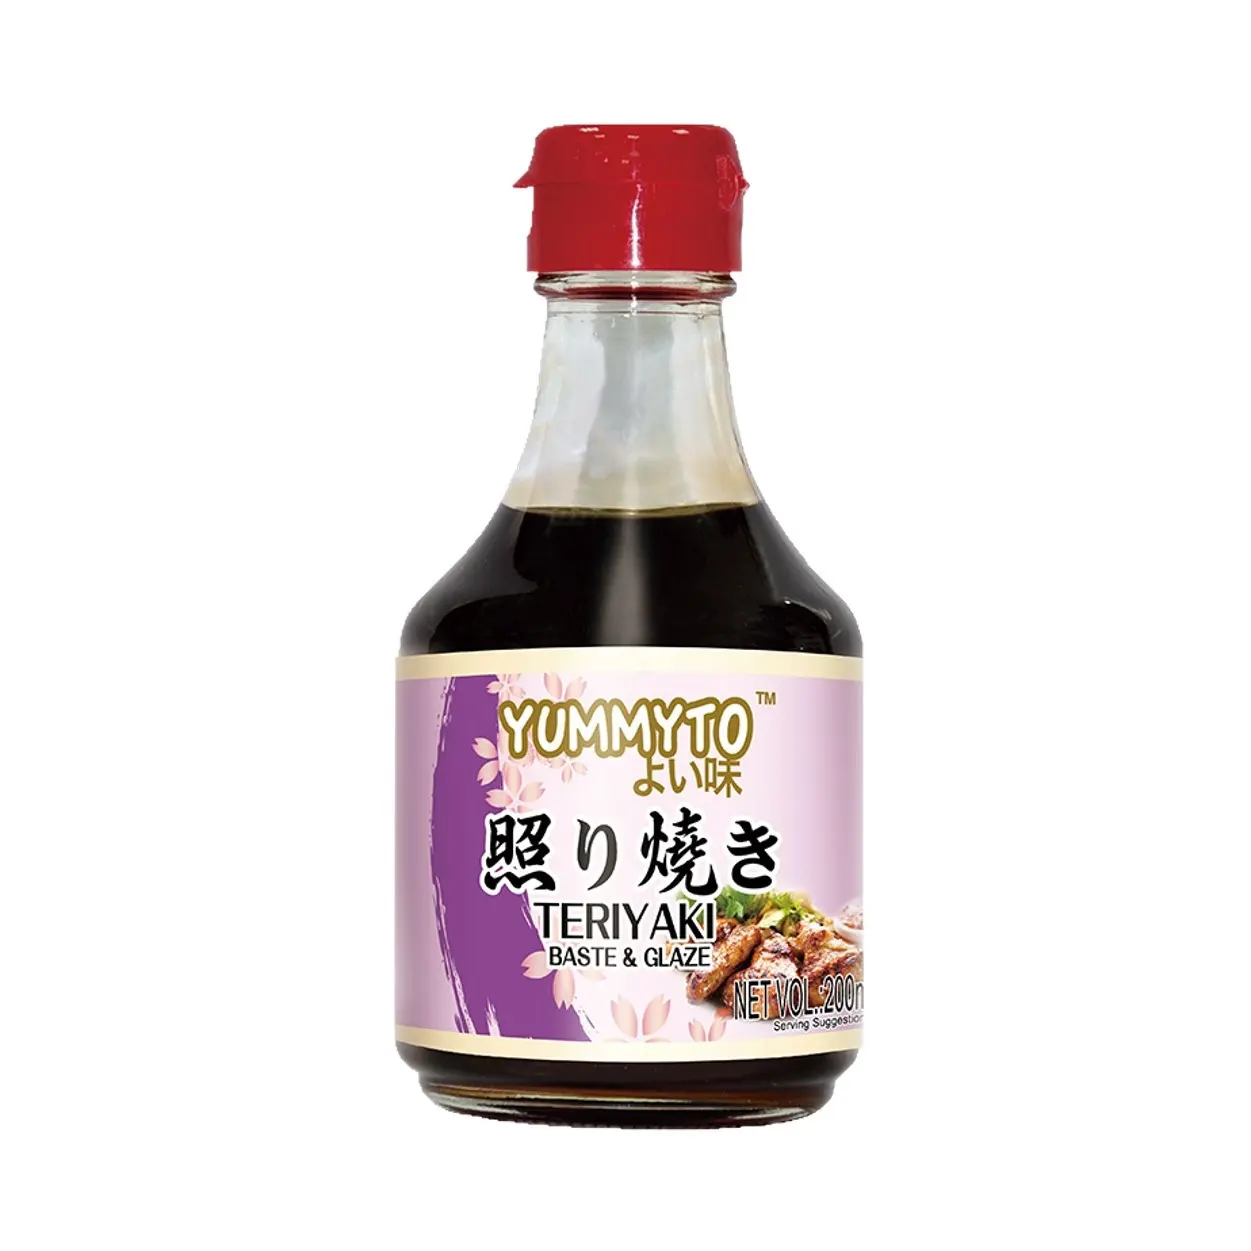 سعر المصنع Teriyaki زجاجة معجون وصلصة ترياكي اليابانية